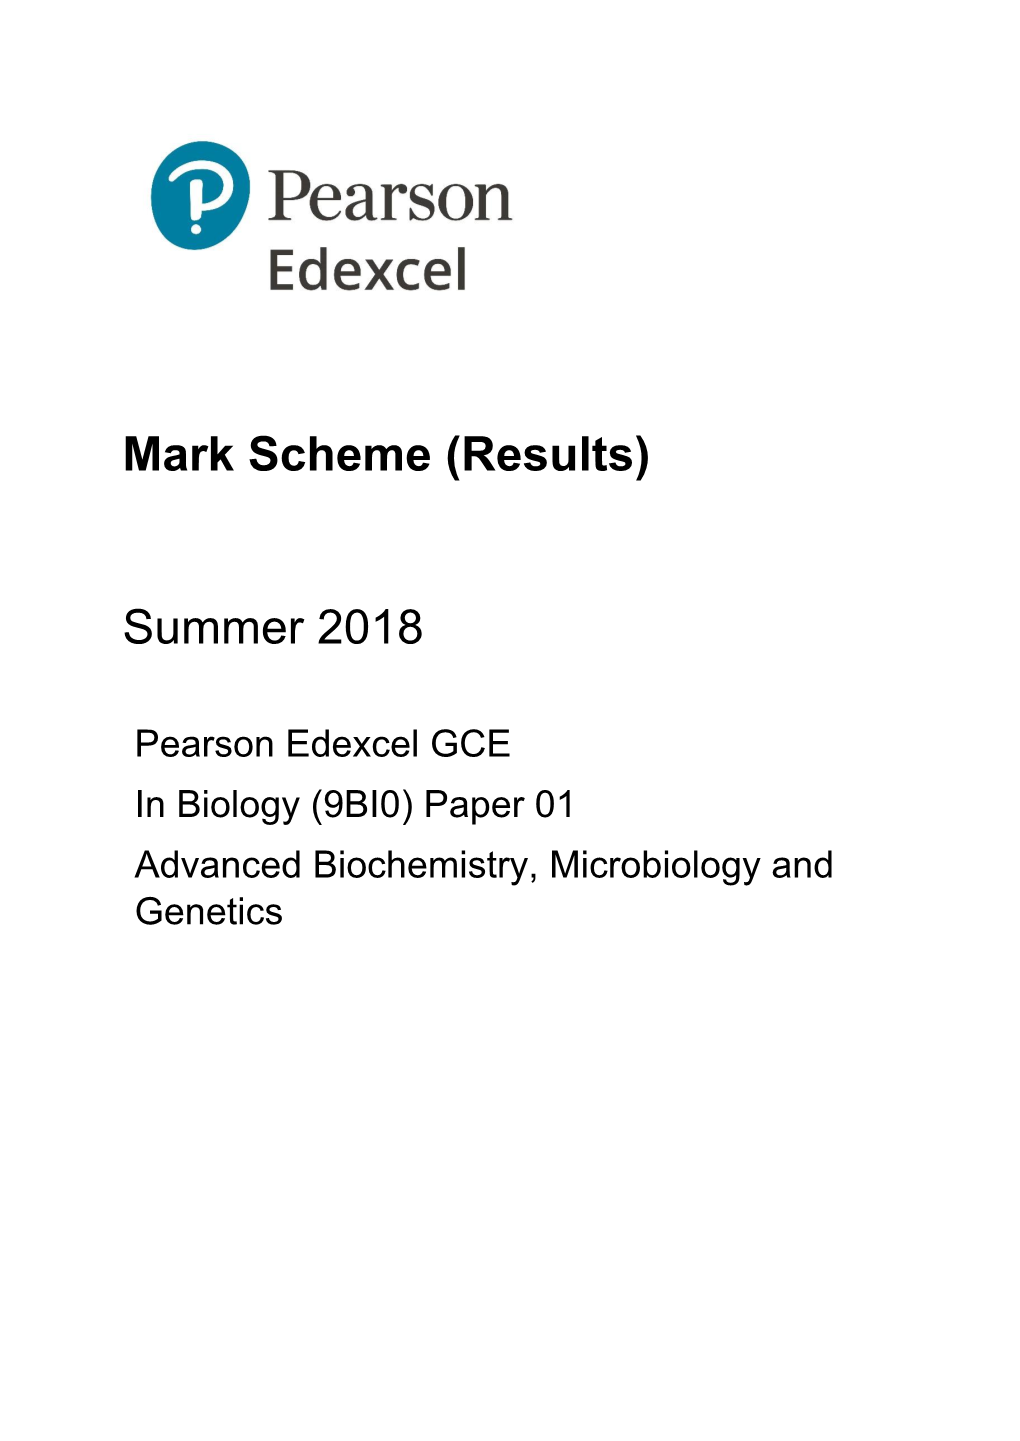 Mark Scheme (Results) Summer 2018